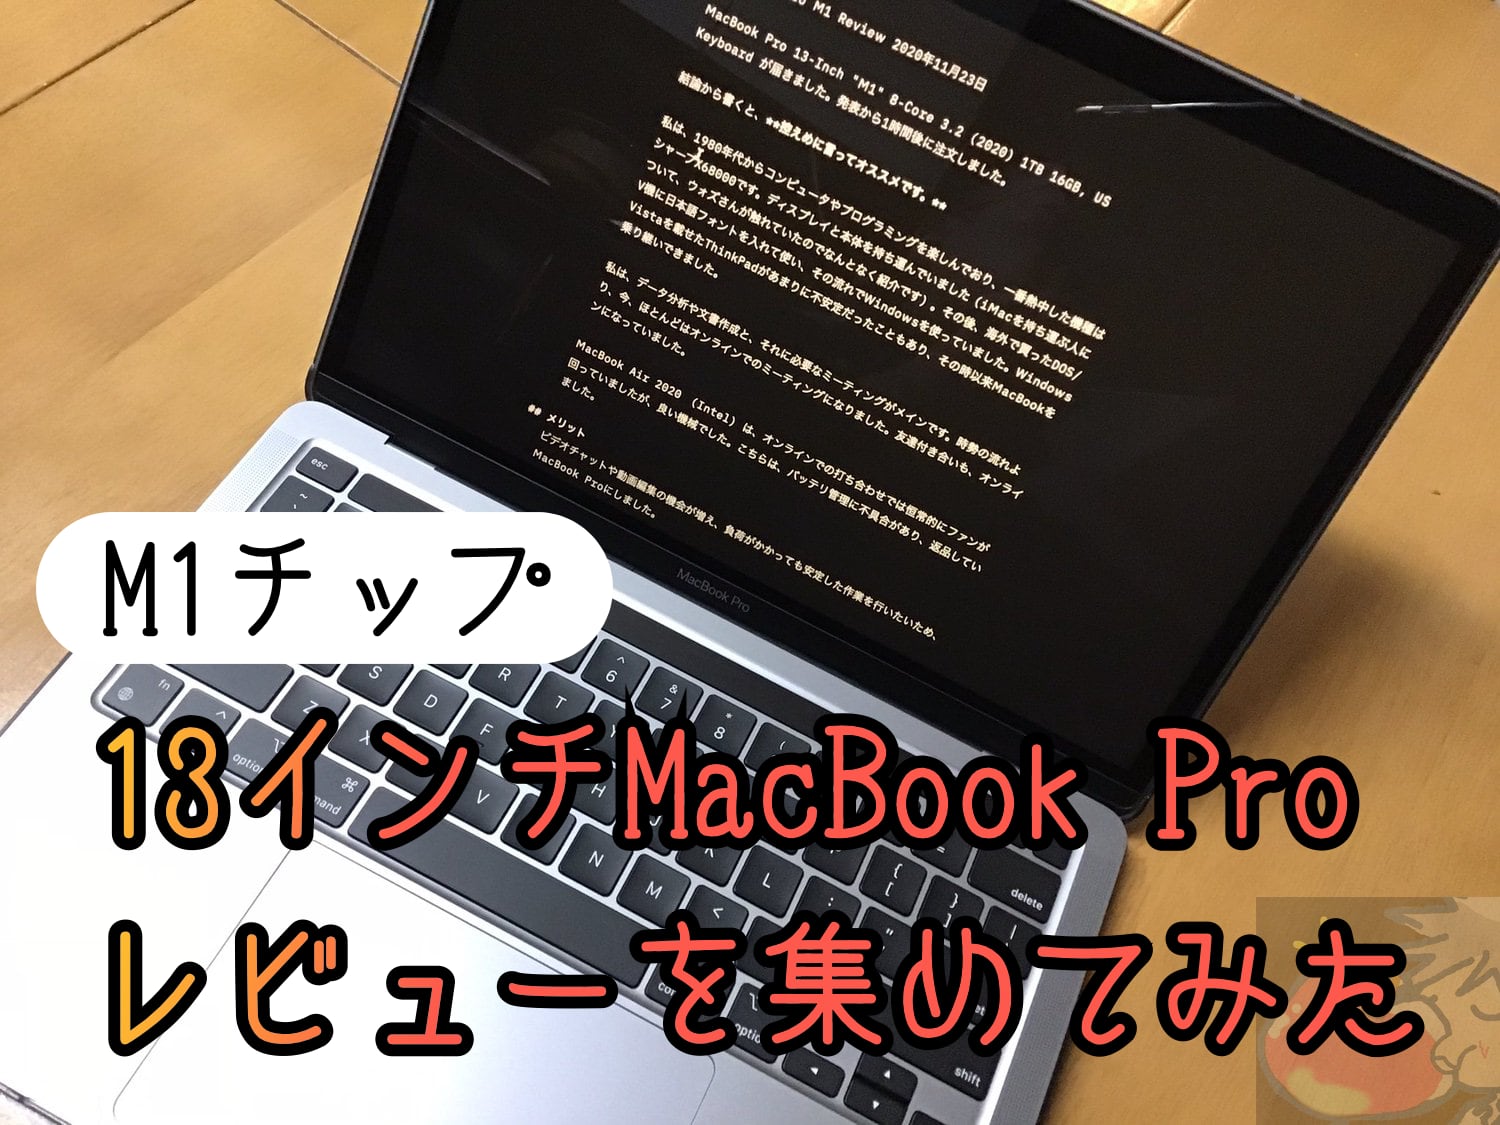 MacBook Pro(M1)のレビューを5名分集めてわかった37のこと